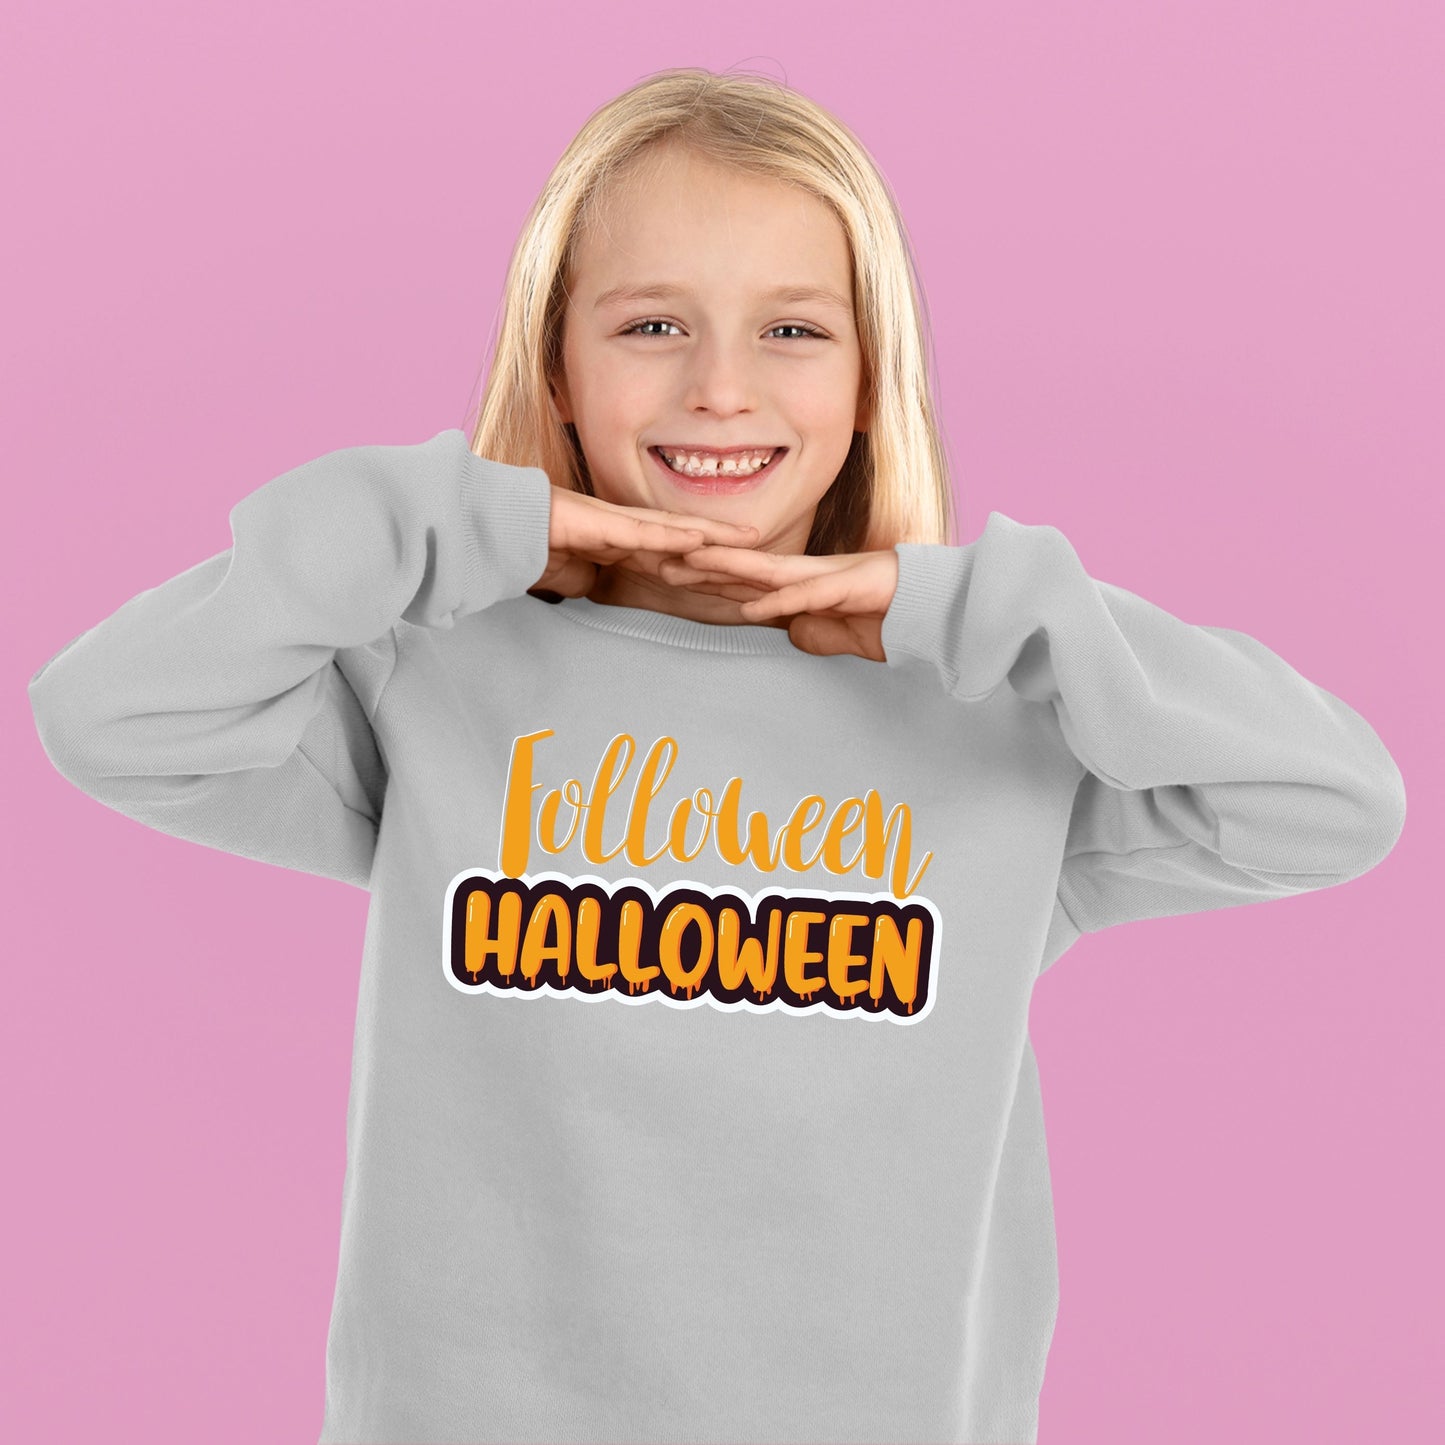 Halloween Folloween Halloween Bodysuit, Halloween Gift Bodysuit, Halloween Onesies, Cute Halloween Bodysuit, Halloween Design Shirt